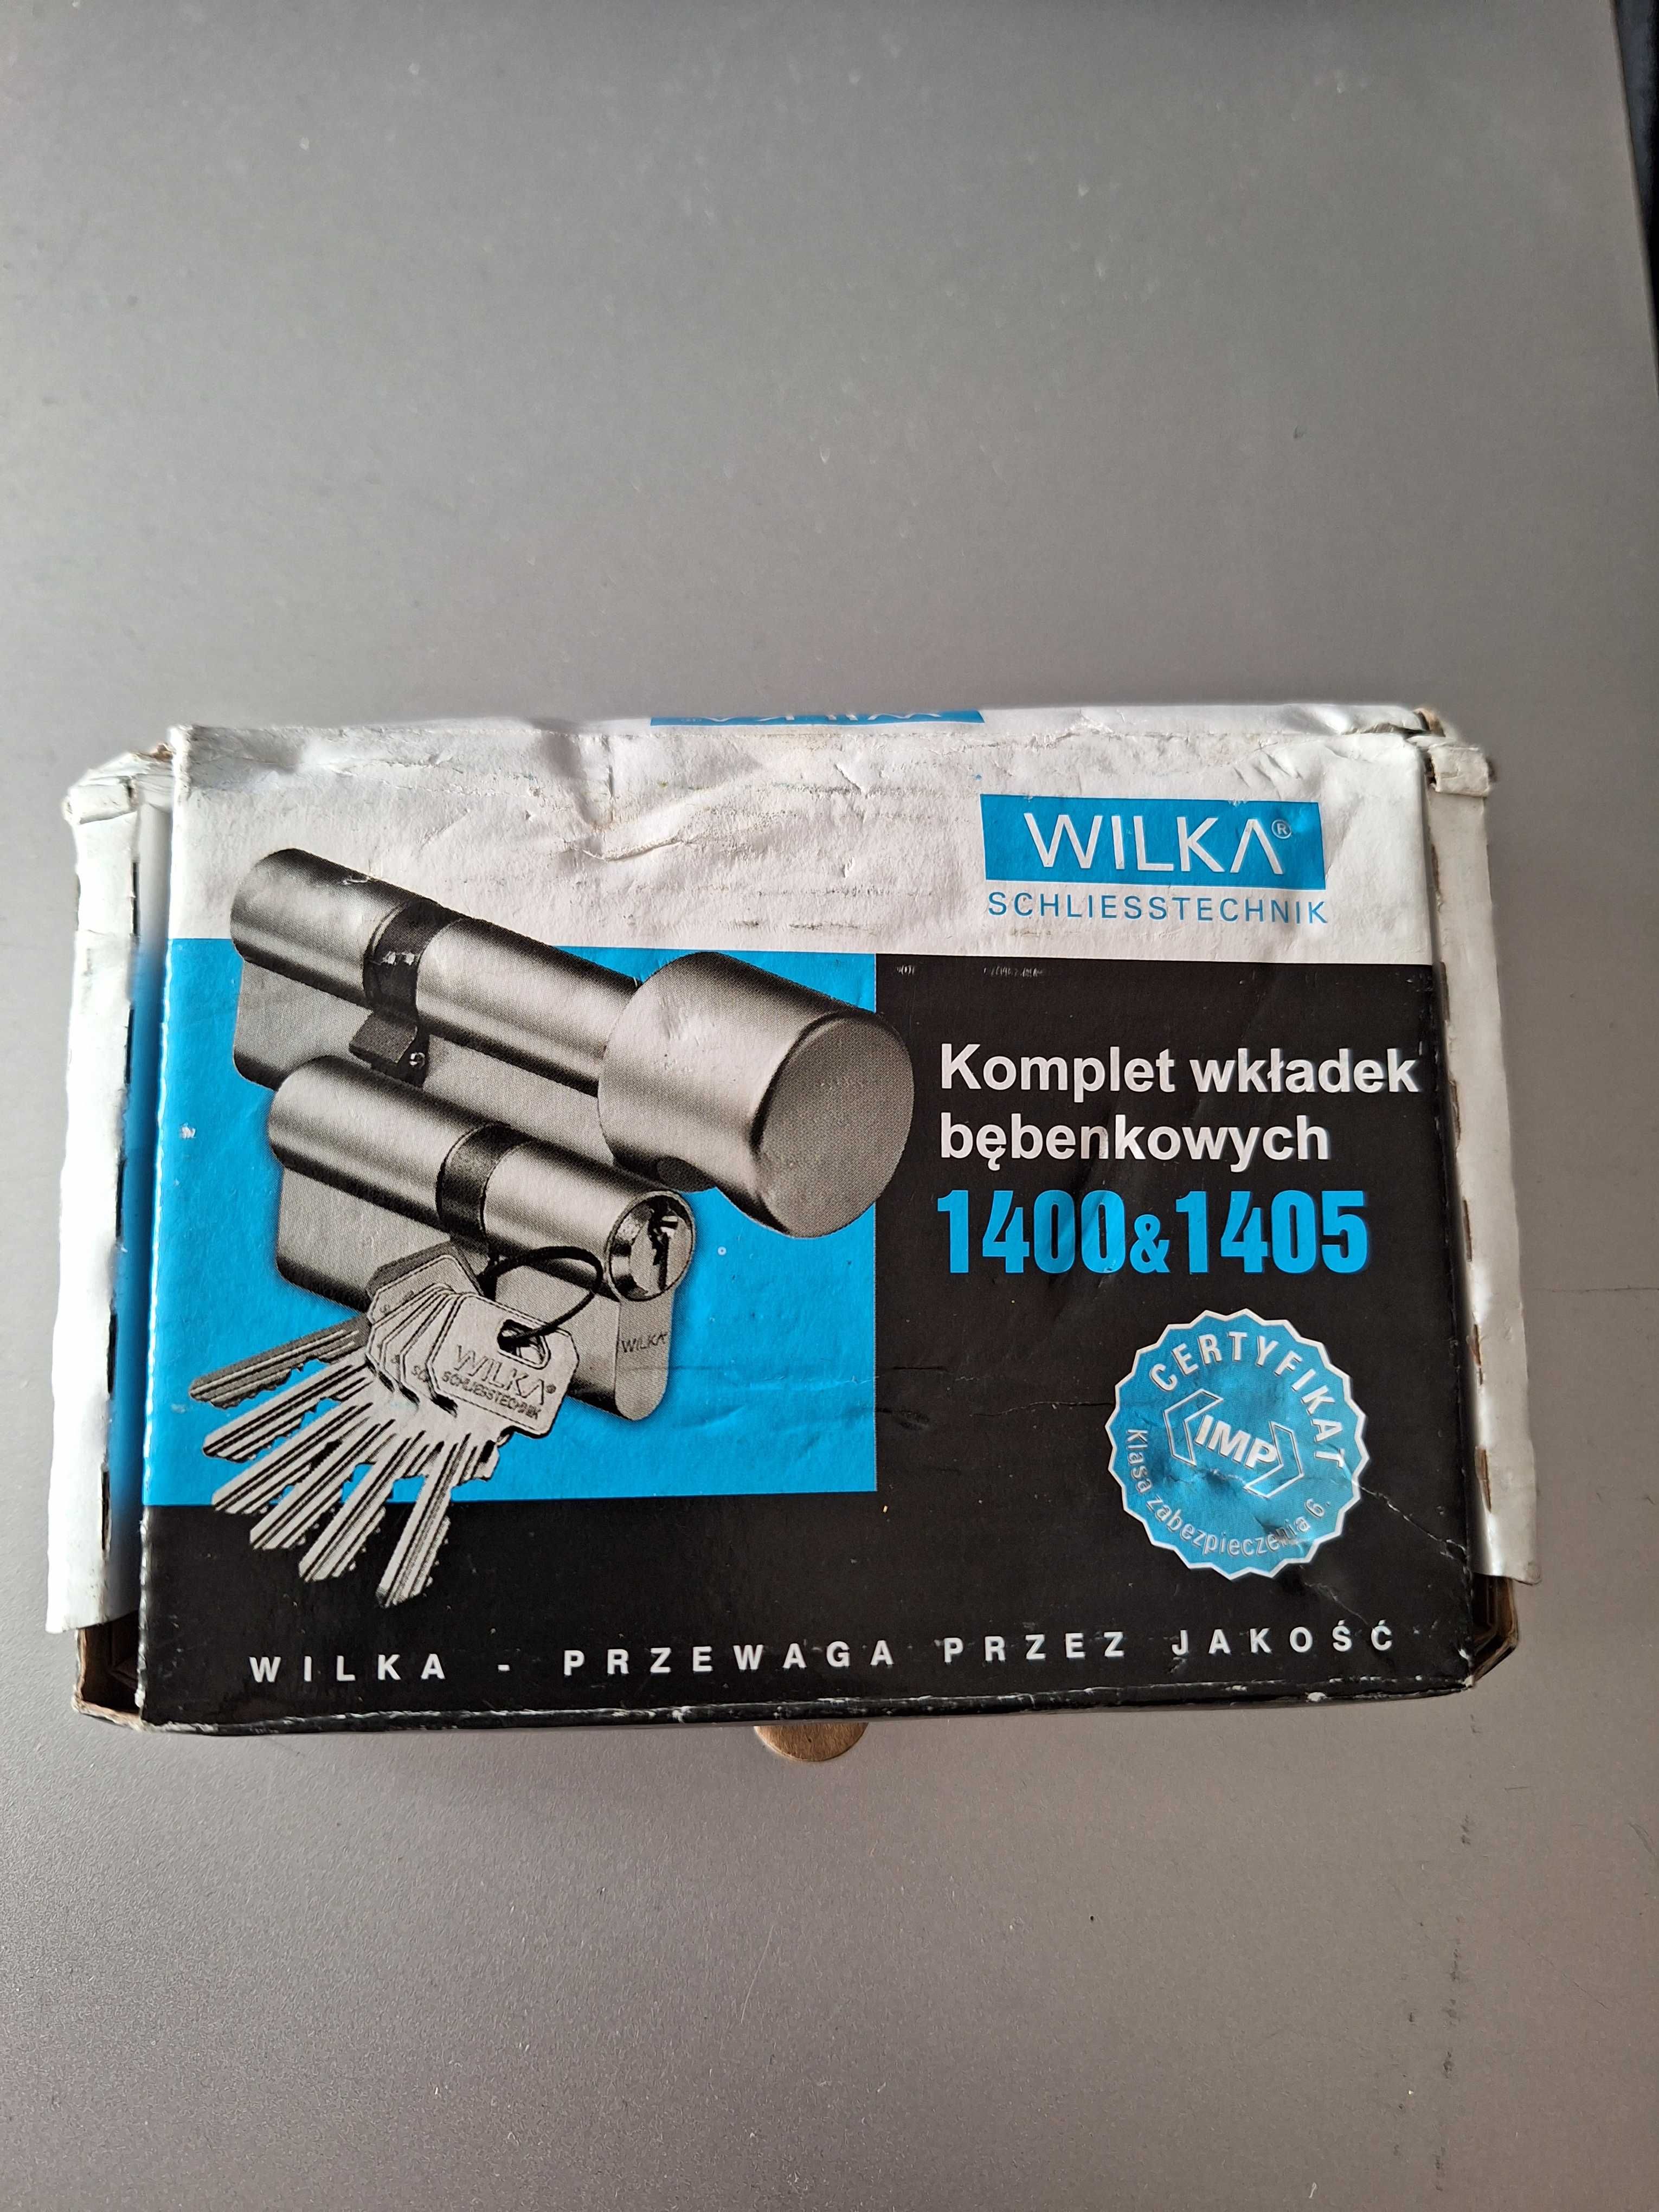 WILKA / Komplet wkładek bębenkowych 1400&1405